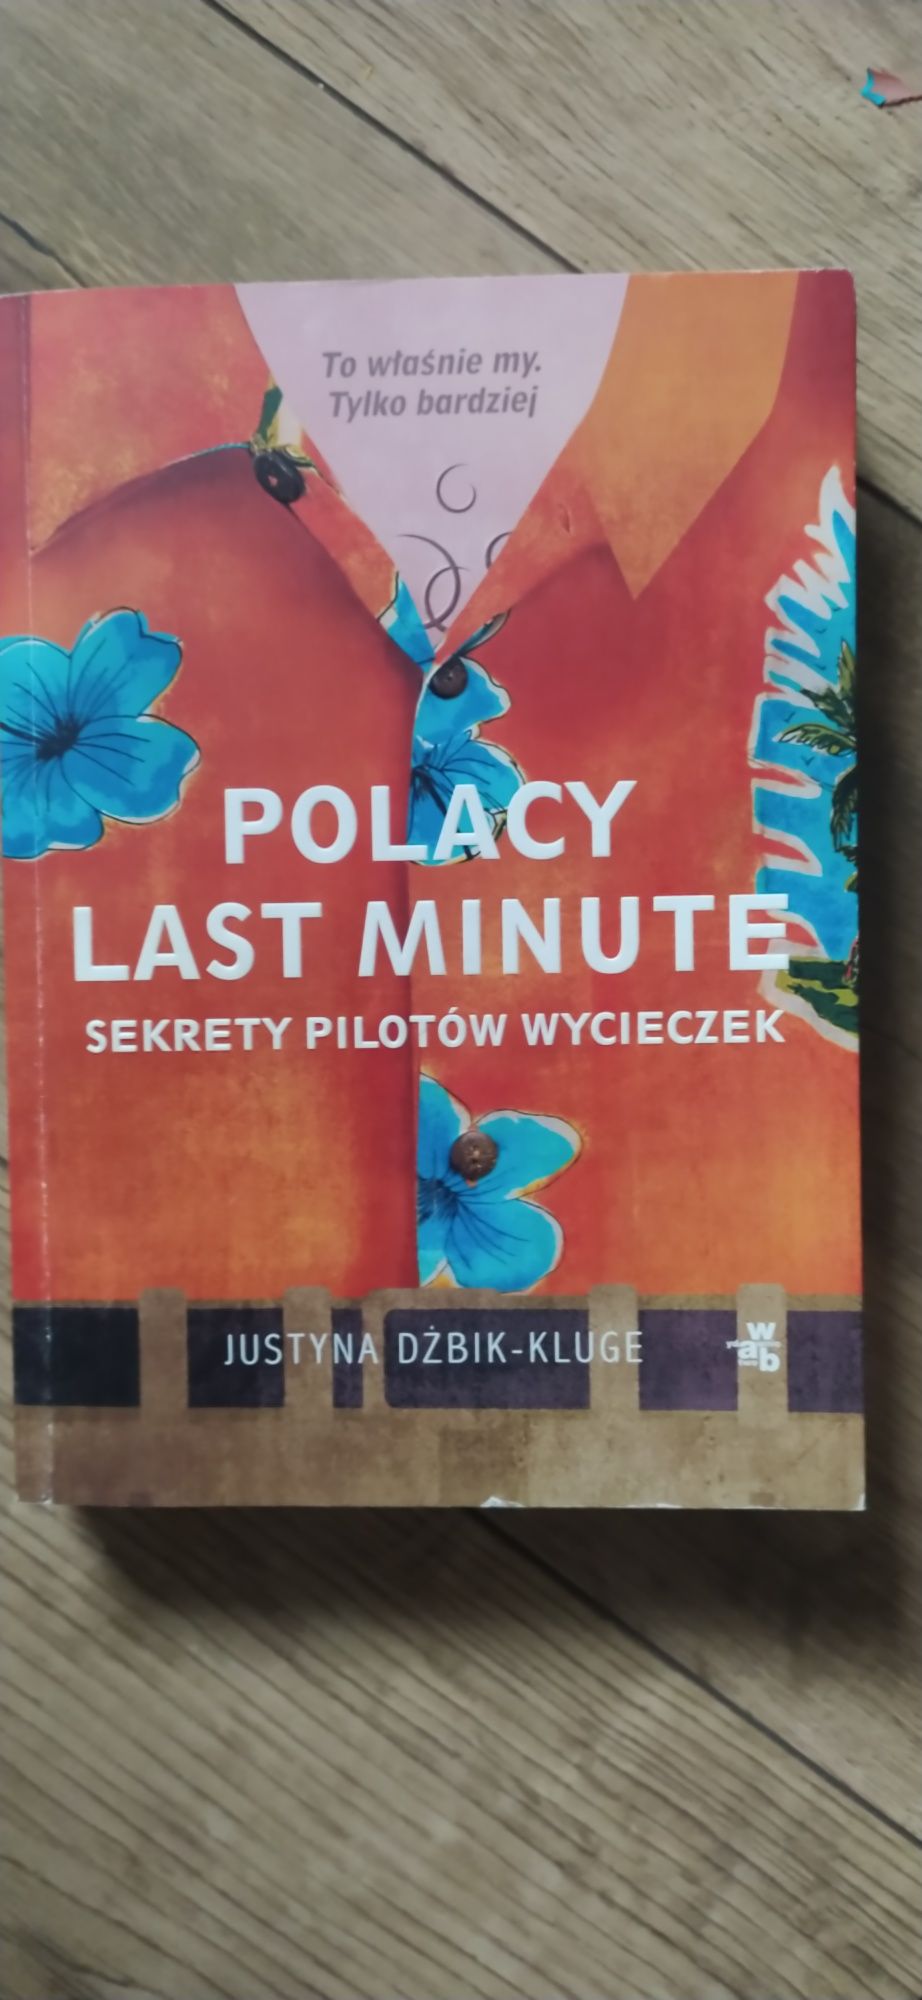 "Polacy Last Minute - sekrety pilotów wycieczek.